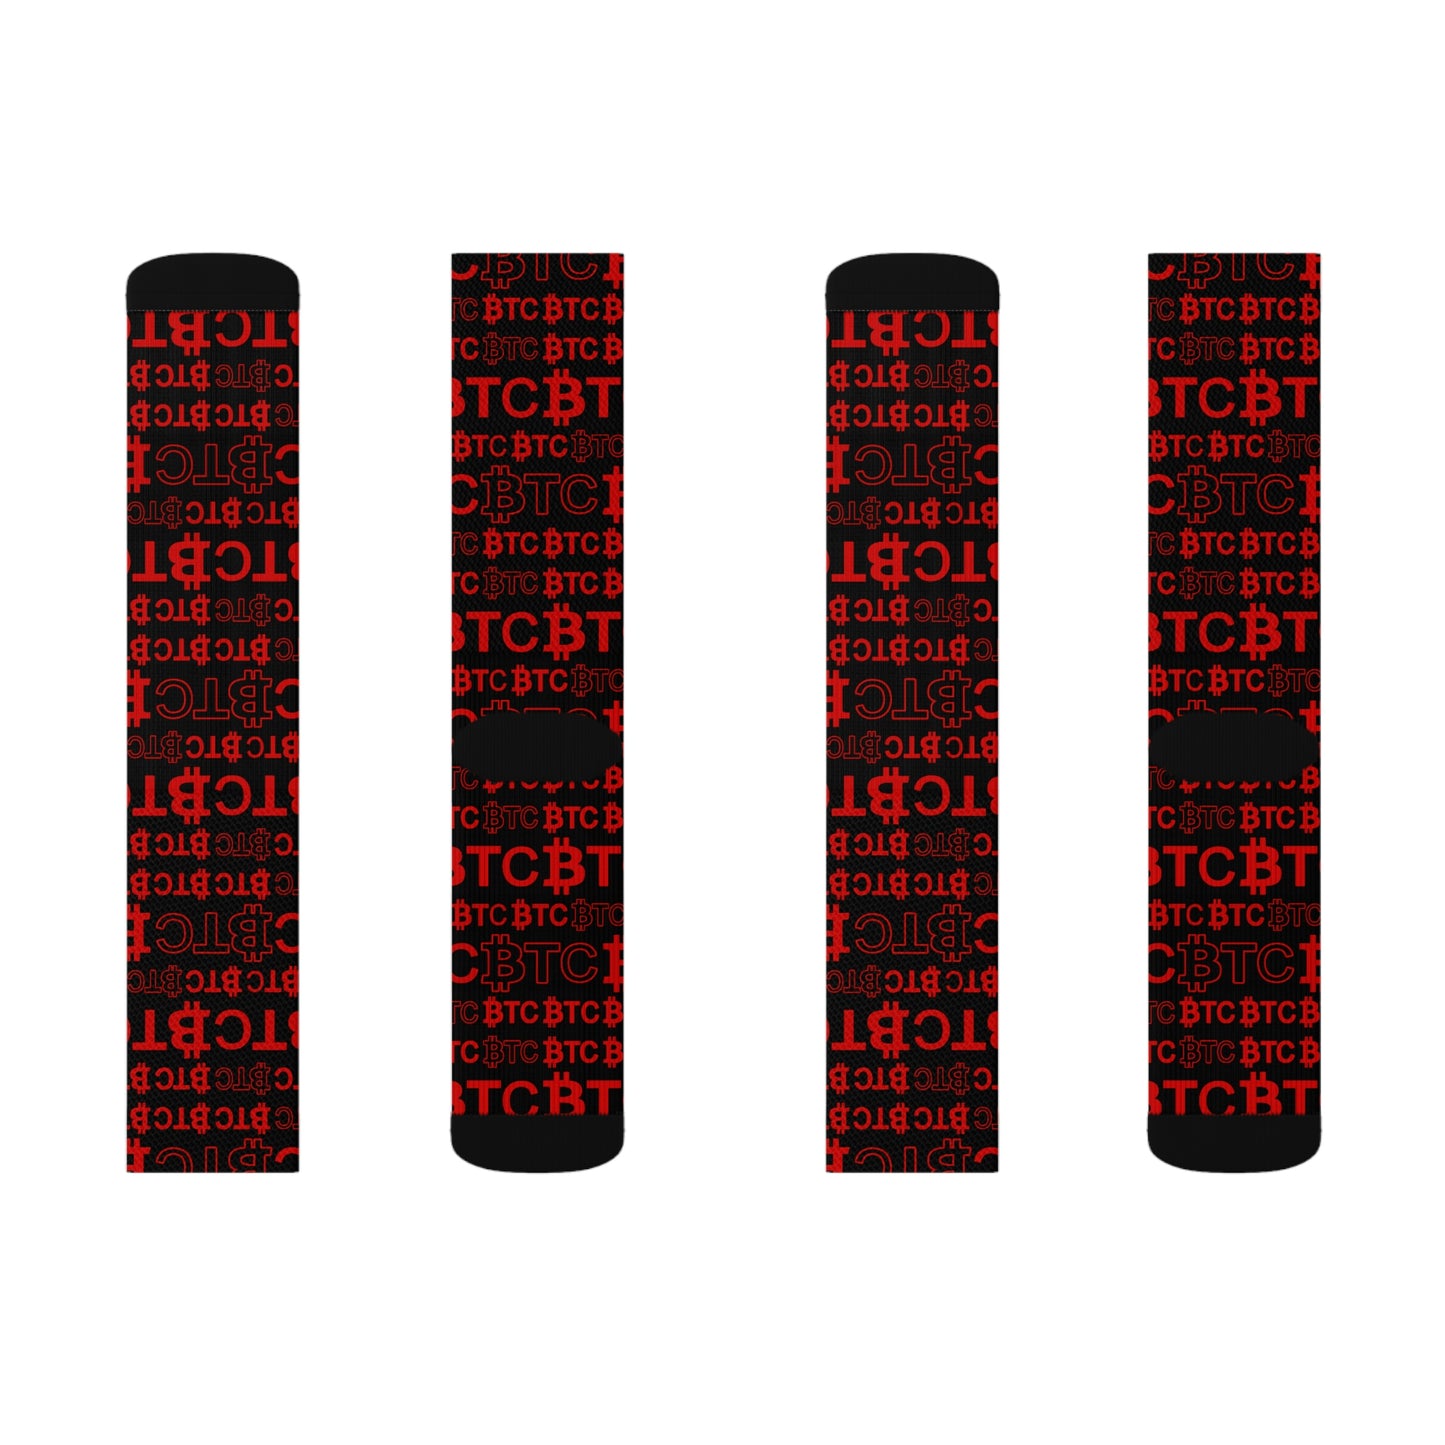 Bitcoin Dubai Red Socks